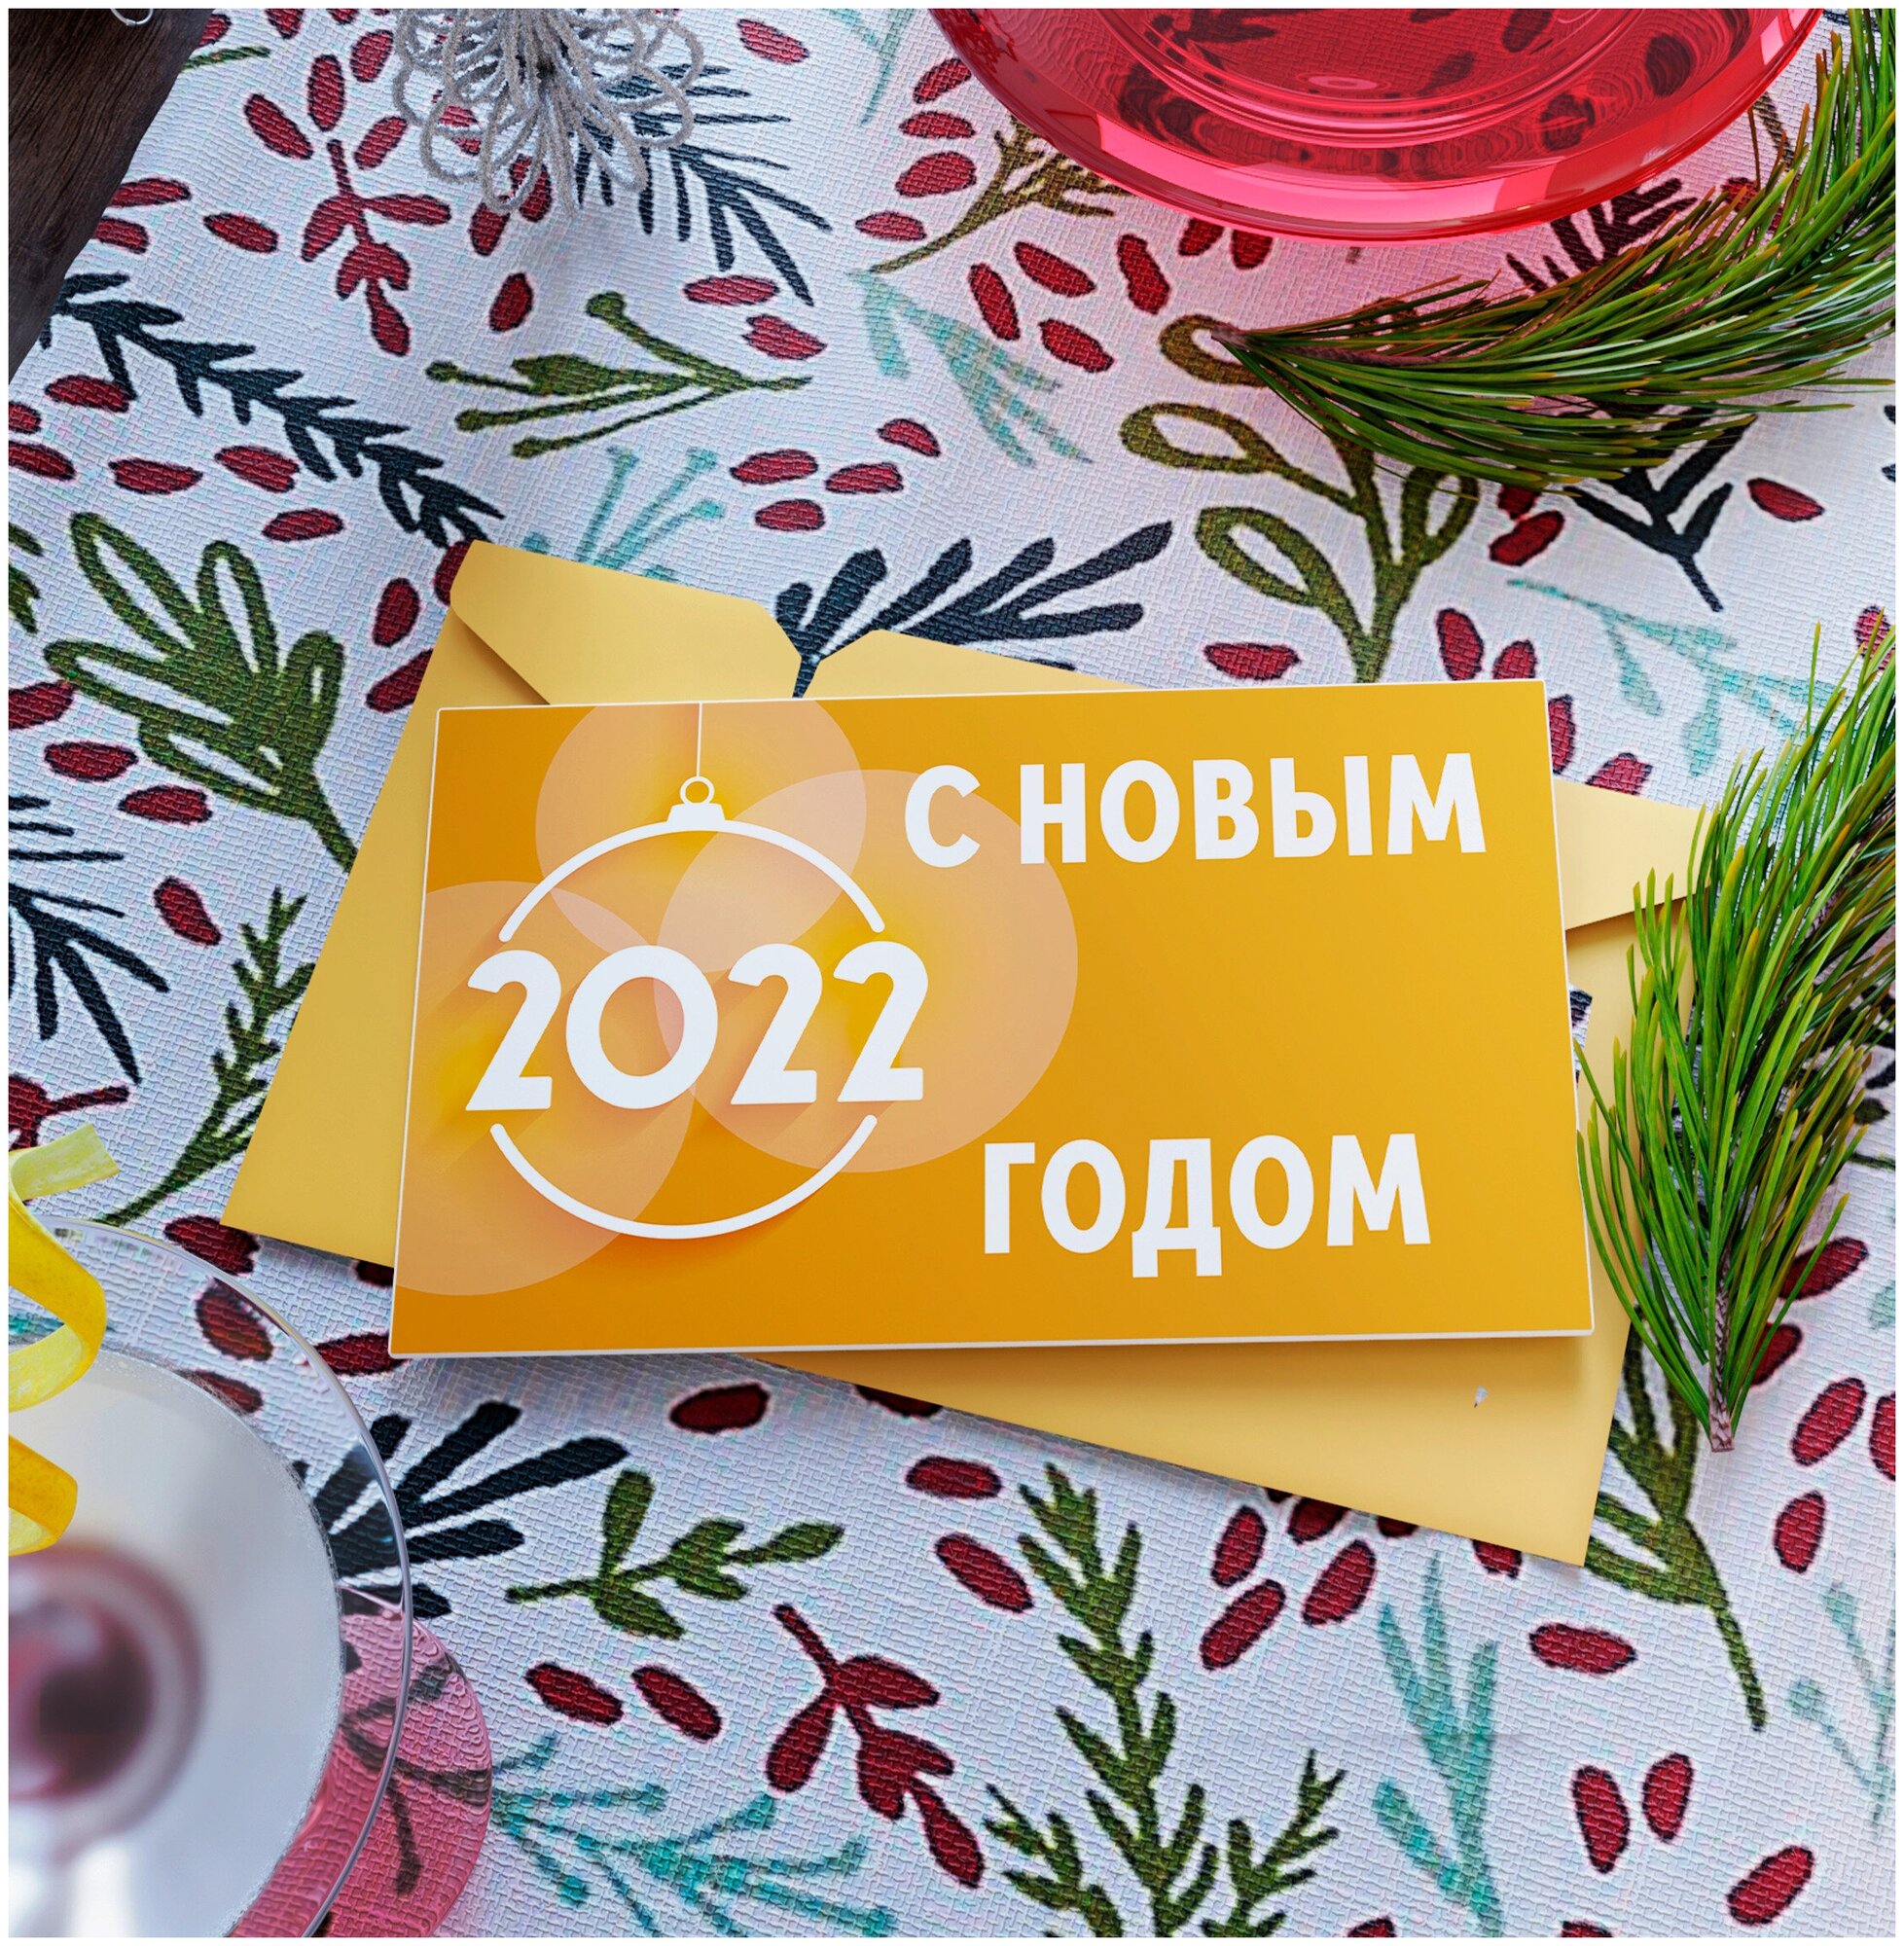 С новым 2022 годом' - большая праздничная открытка Аурасо на Новый Год и Рождество размер в развороте 210x297 мм